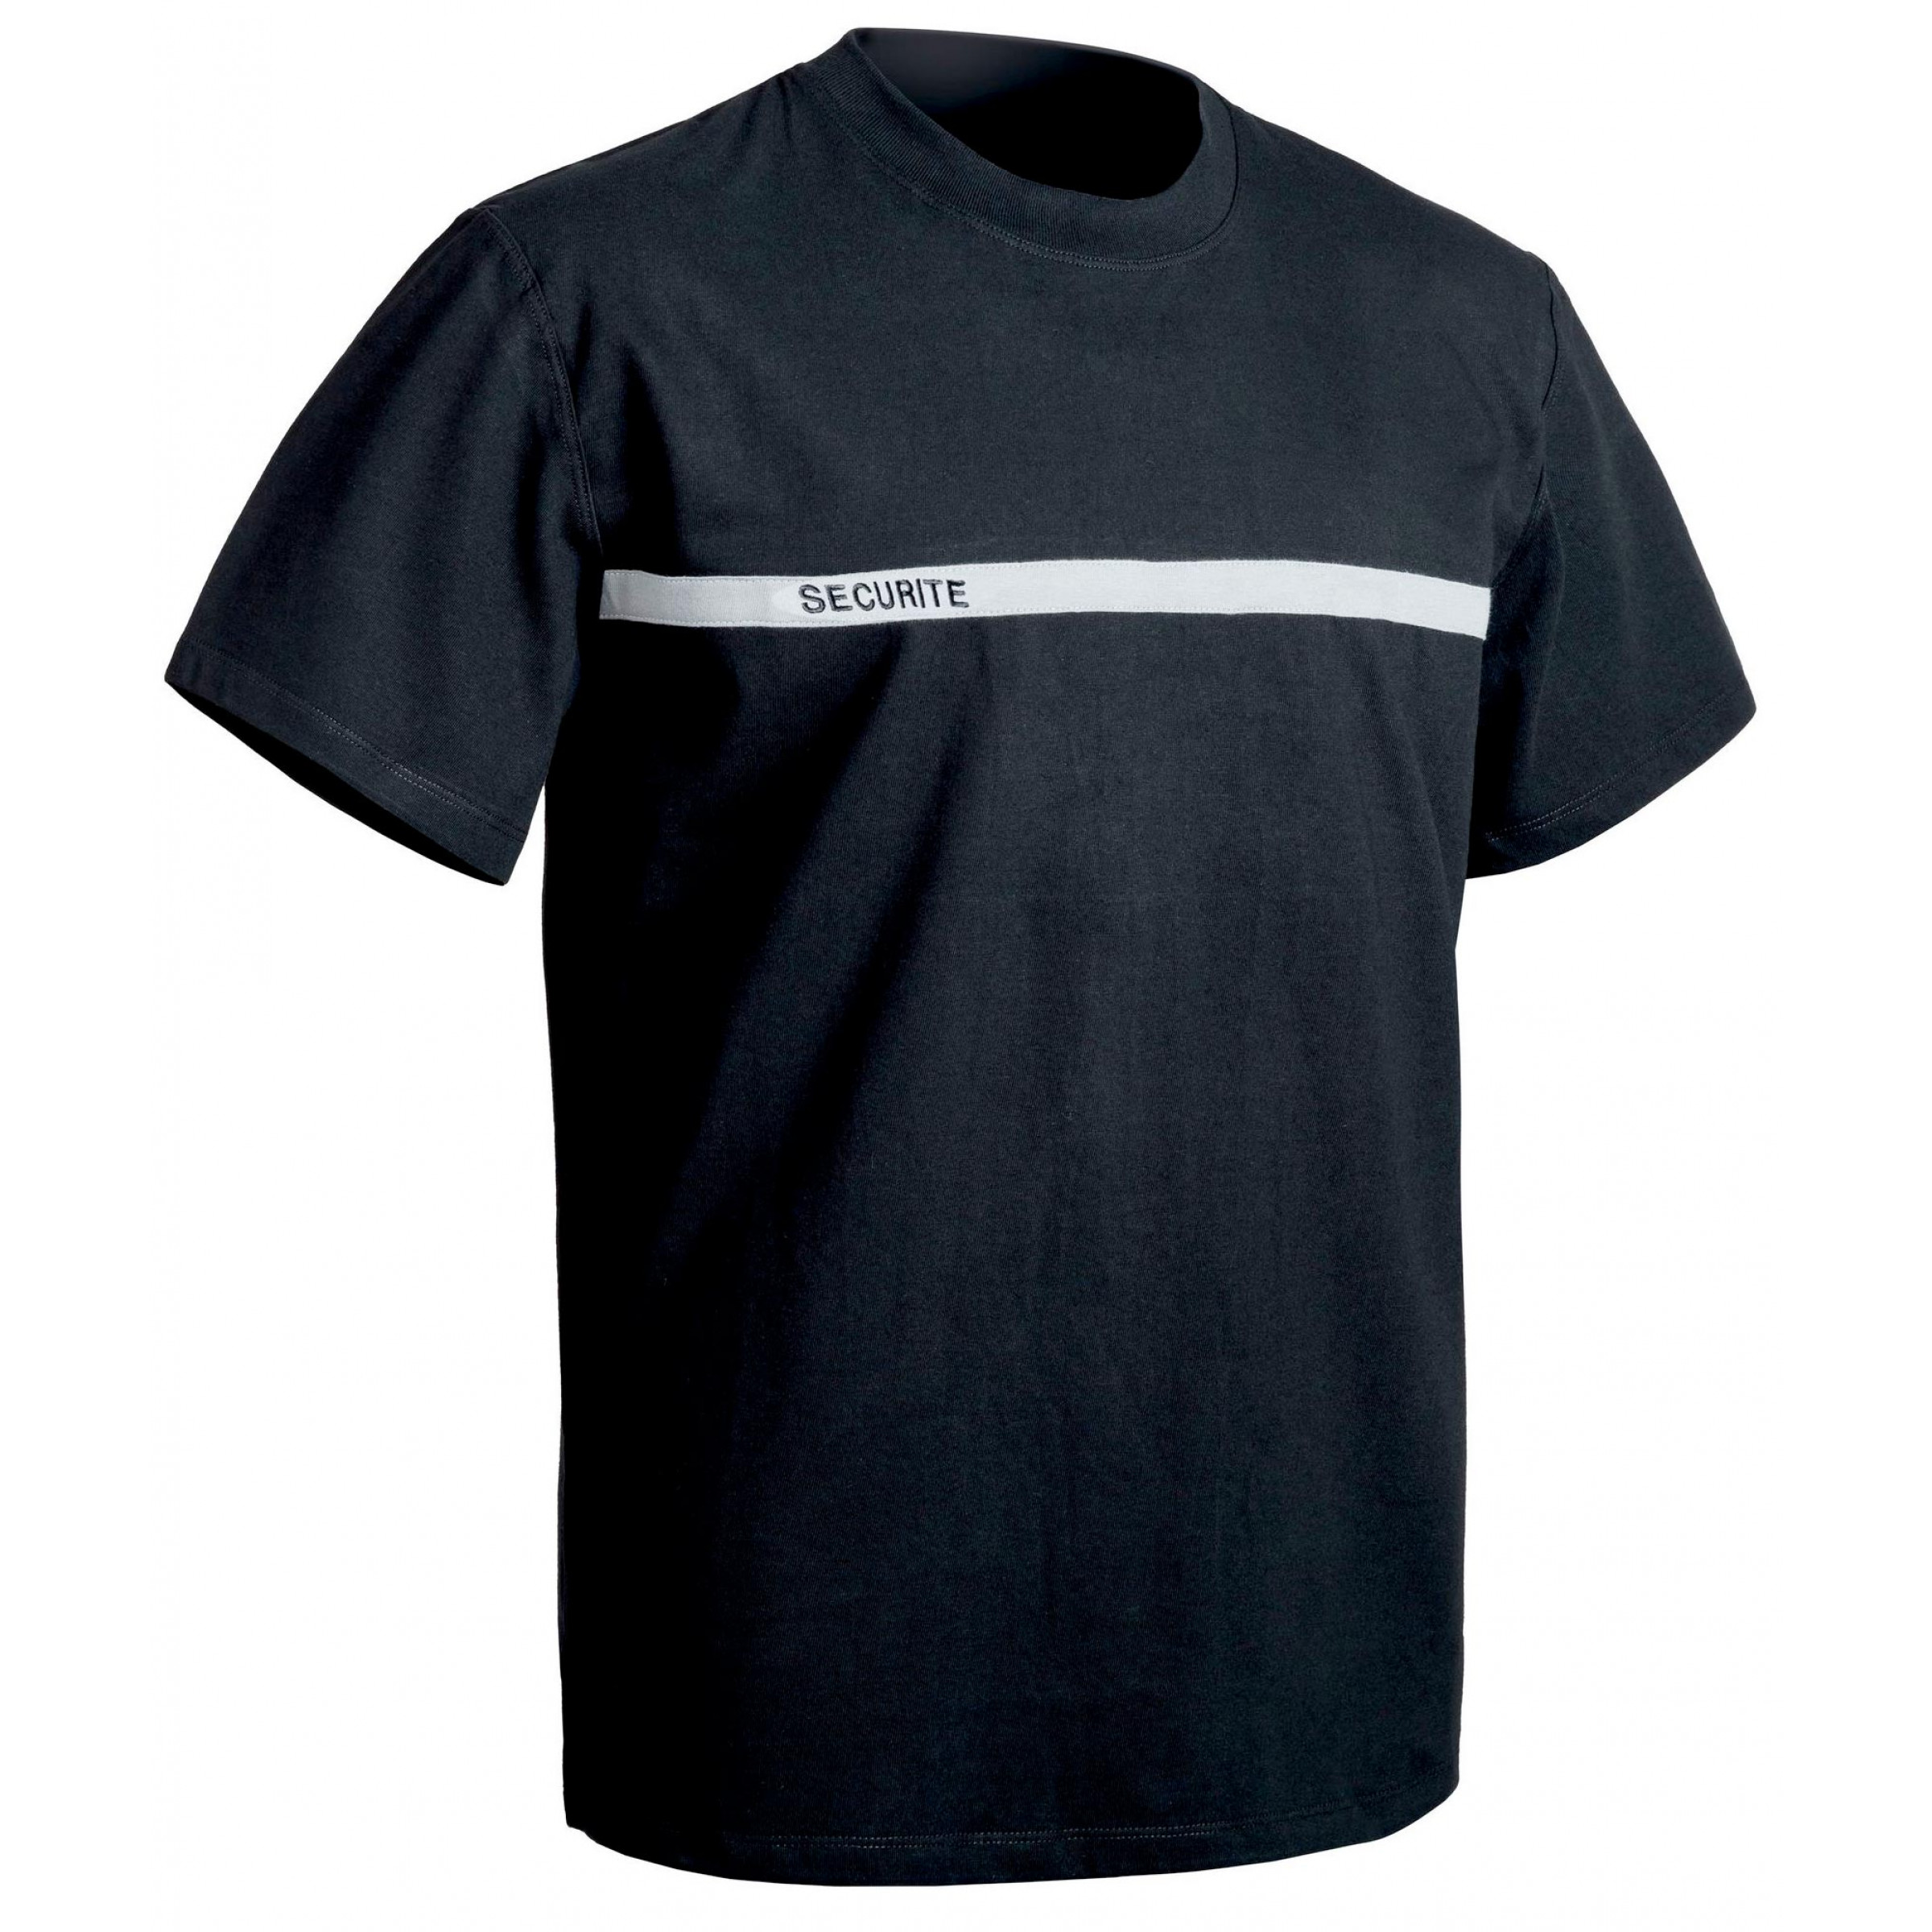 T-shirt SECURITE noir bande grise 